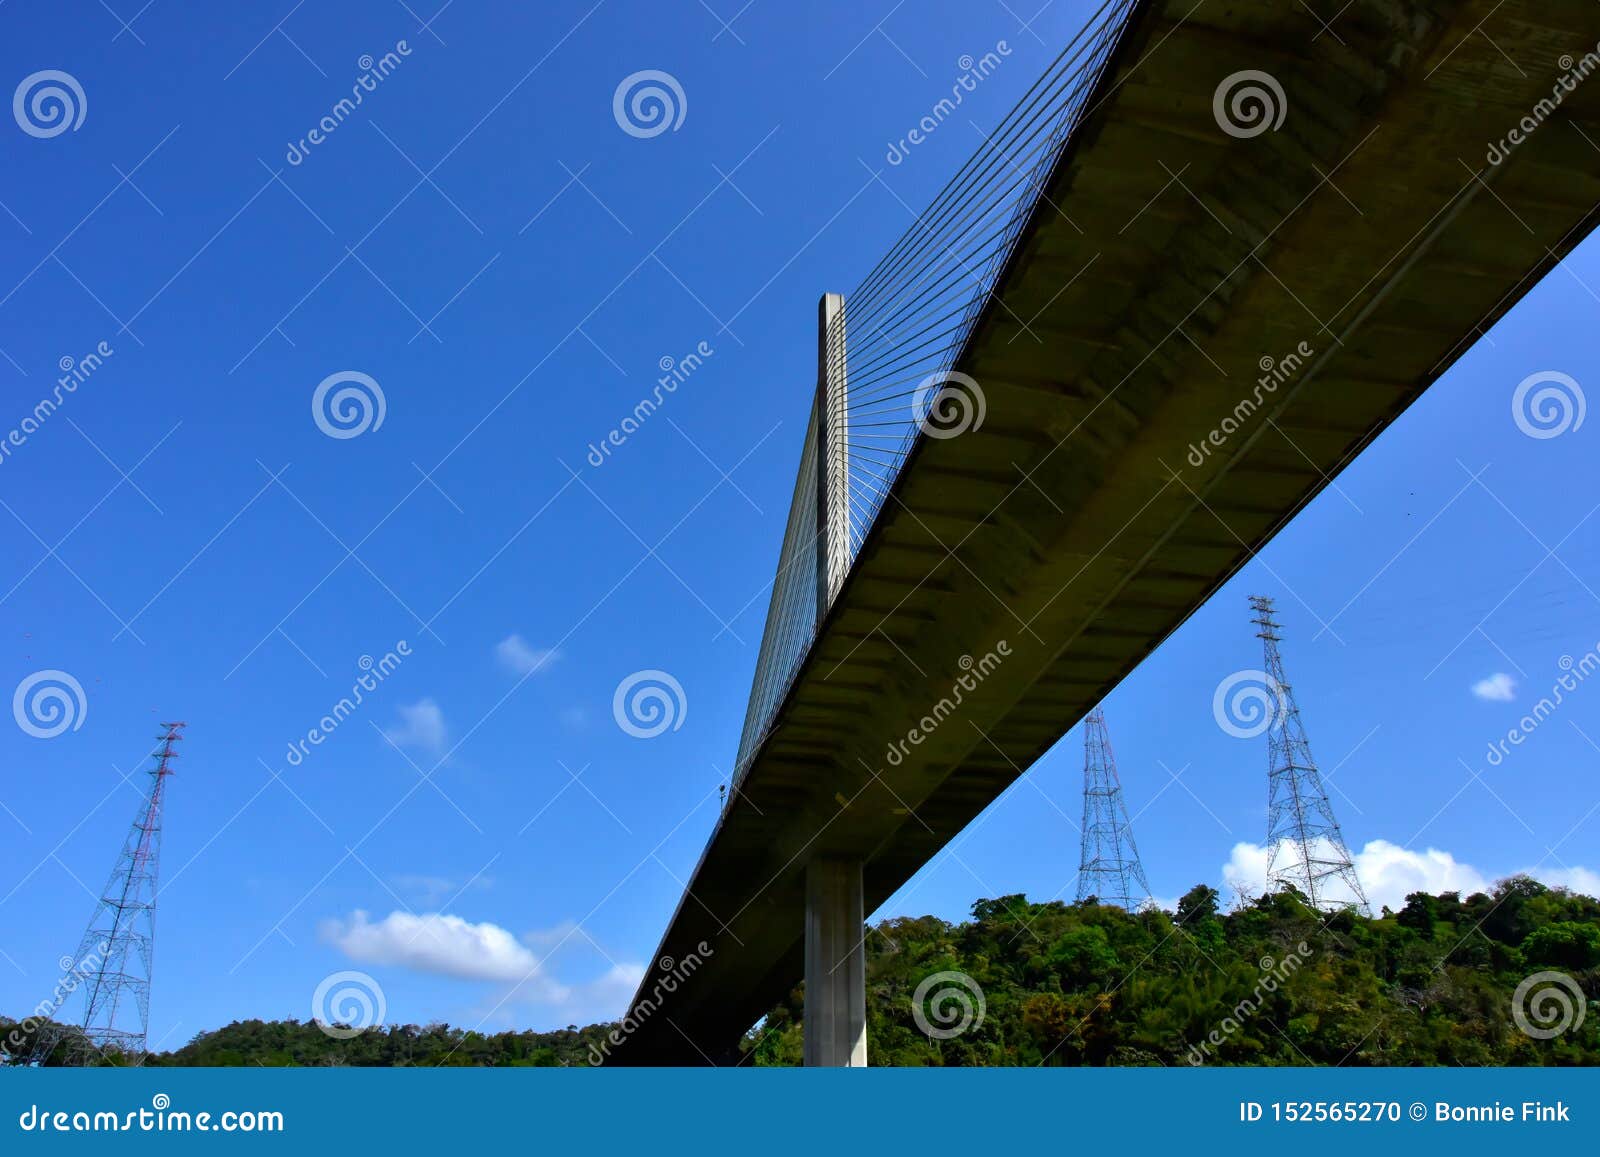 centenario bridge in panama